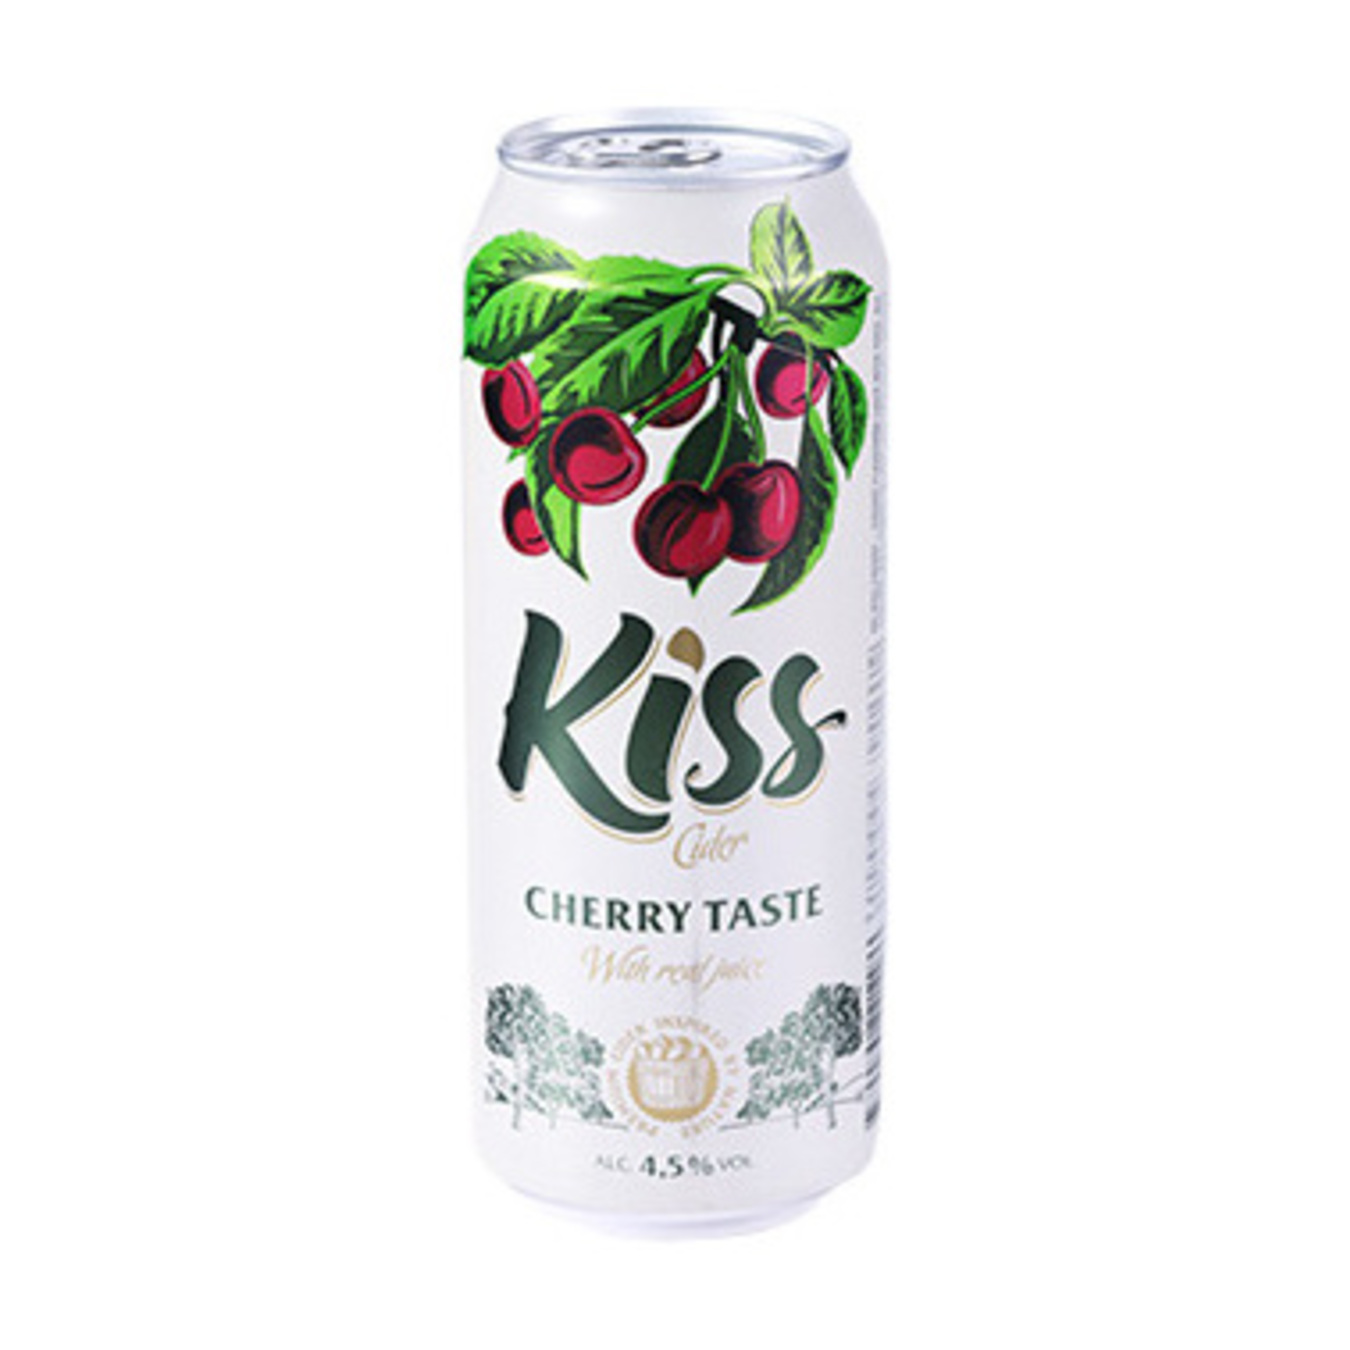 Сидр Kiss зі смаком вишні пастеризований 4,5% 0,5л